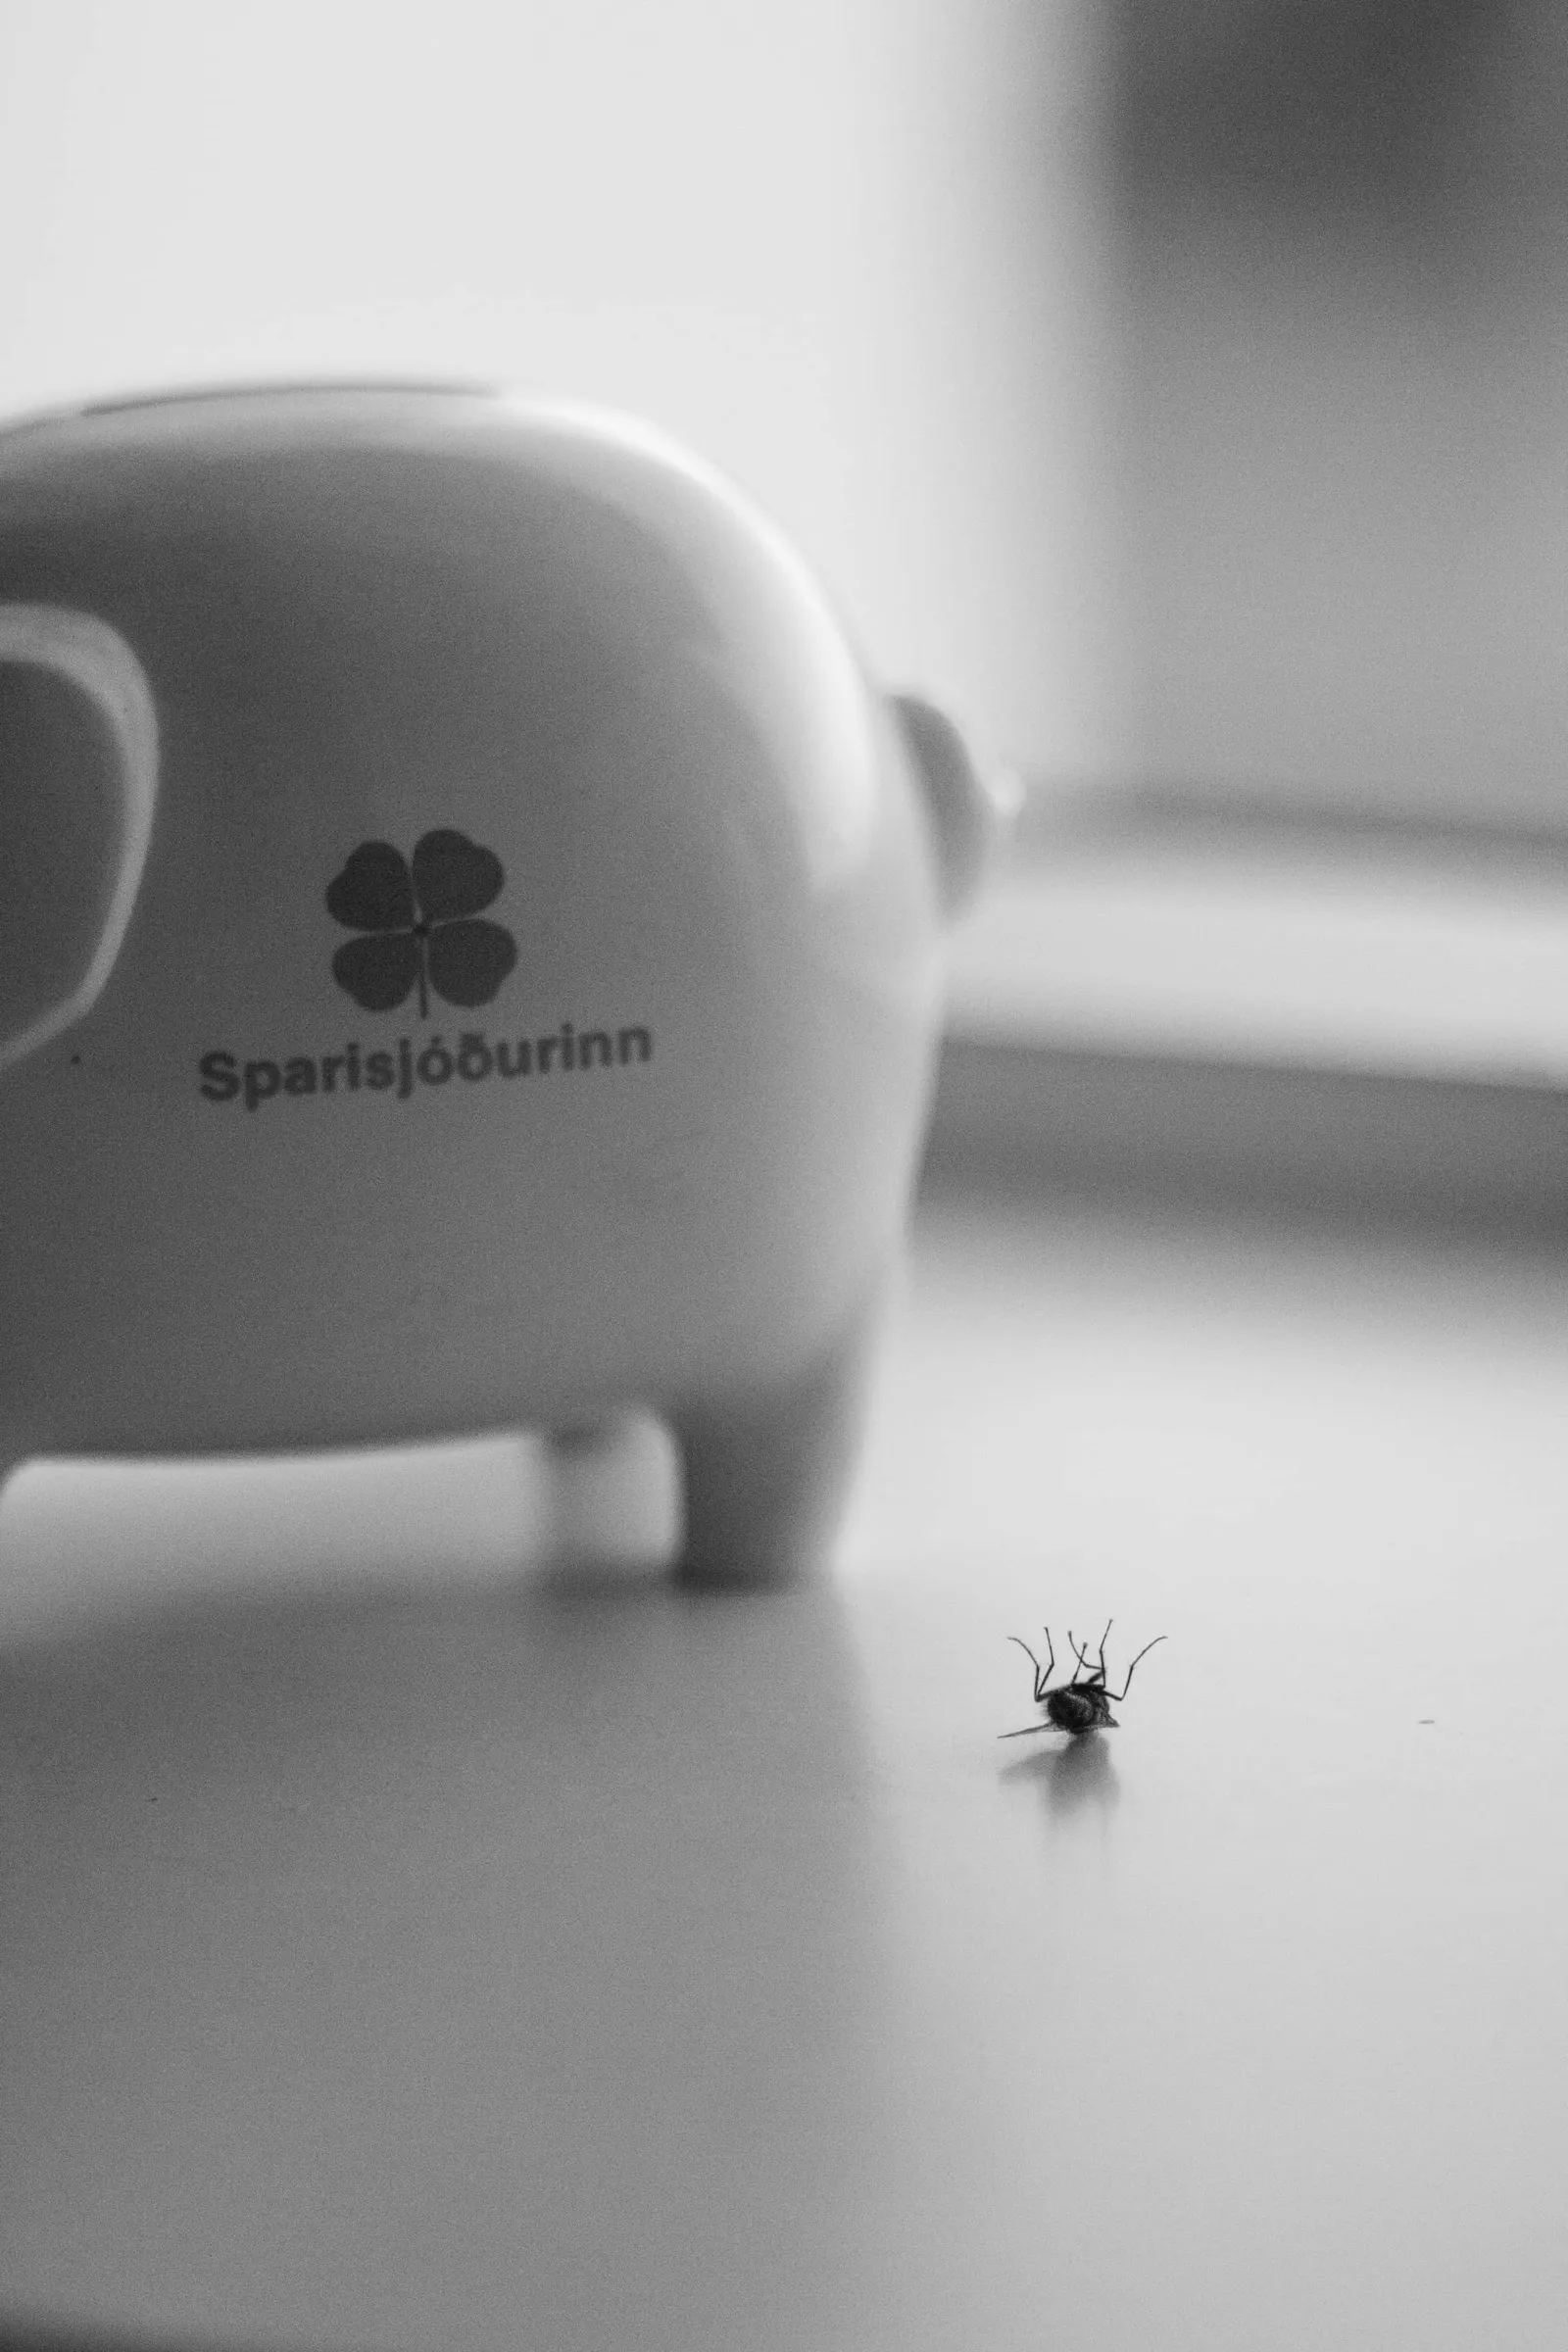 A fly lies dead beside a piggy bank